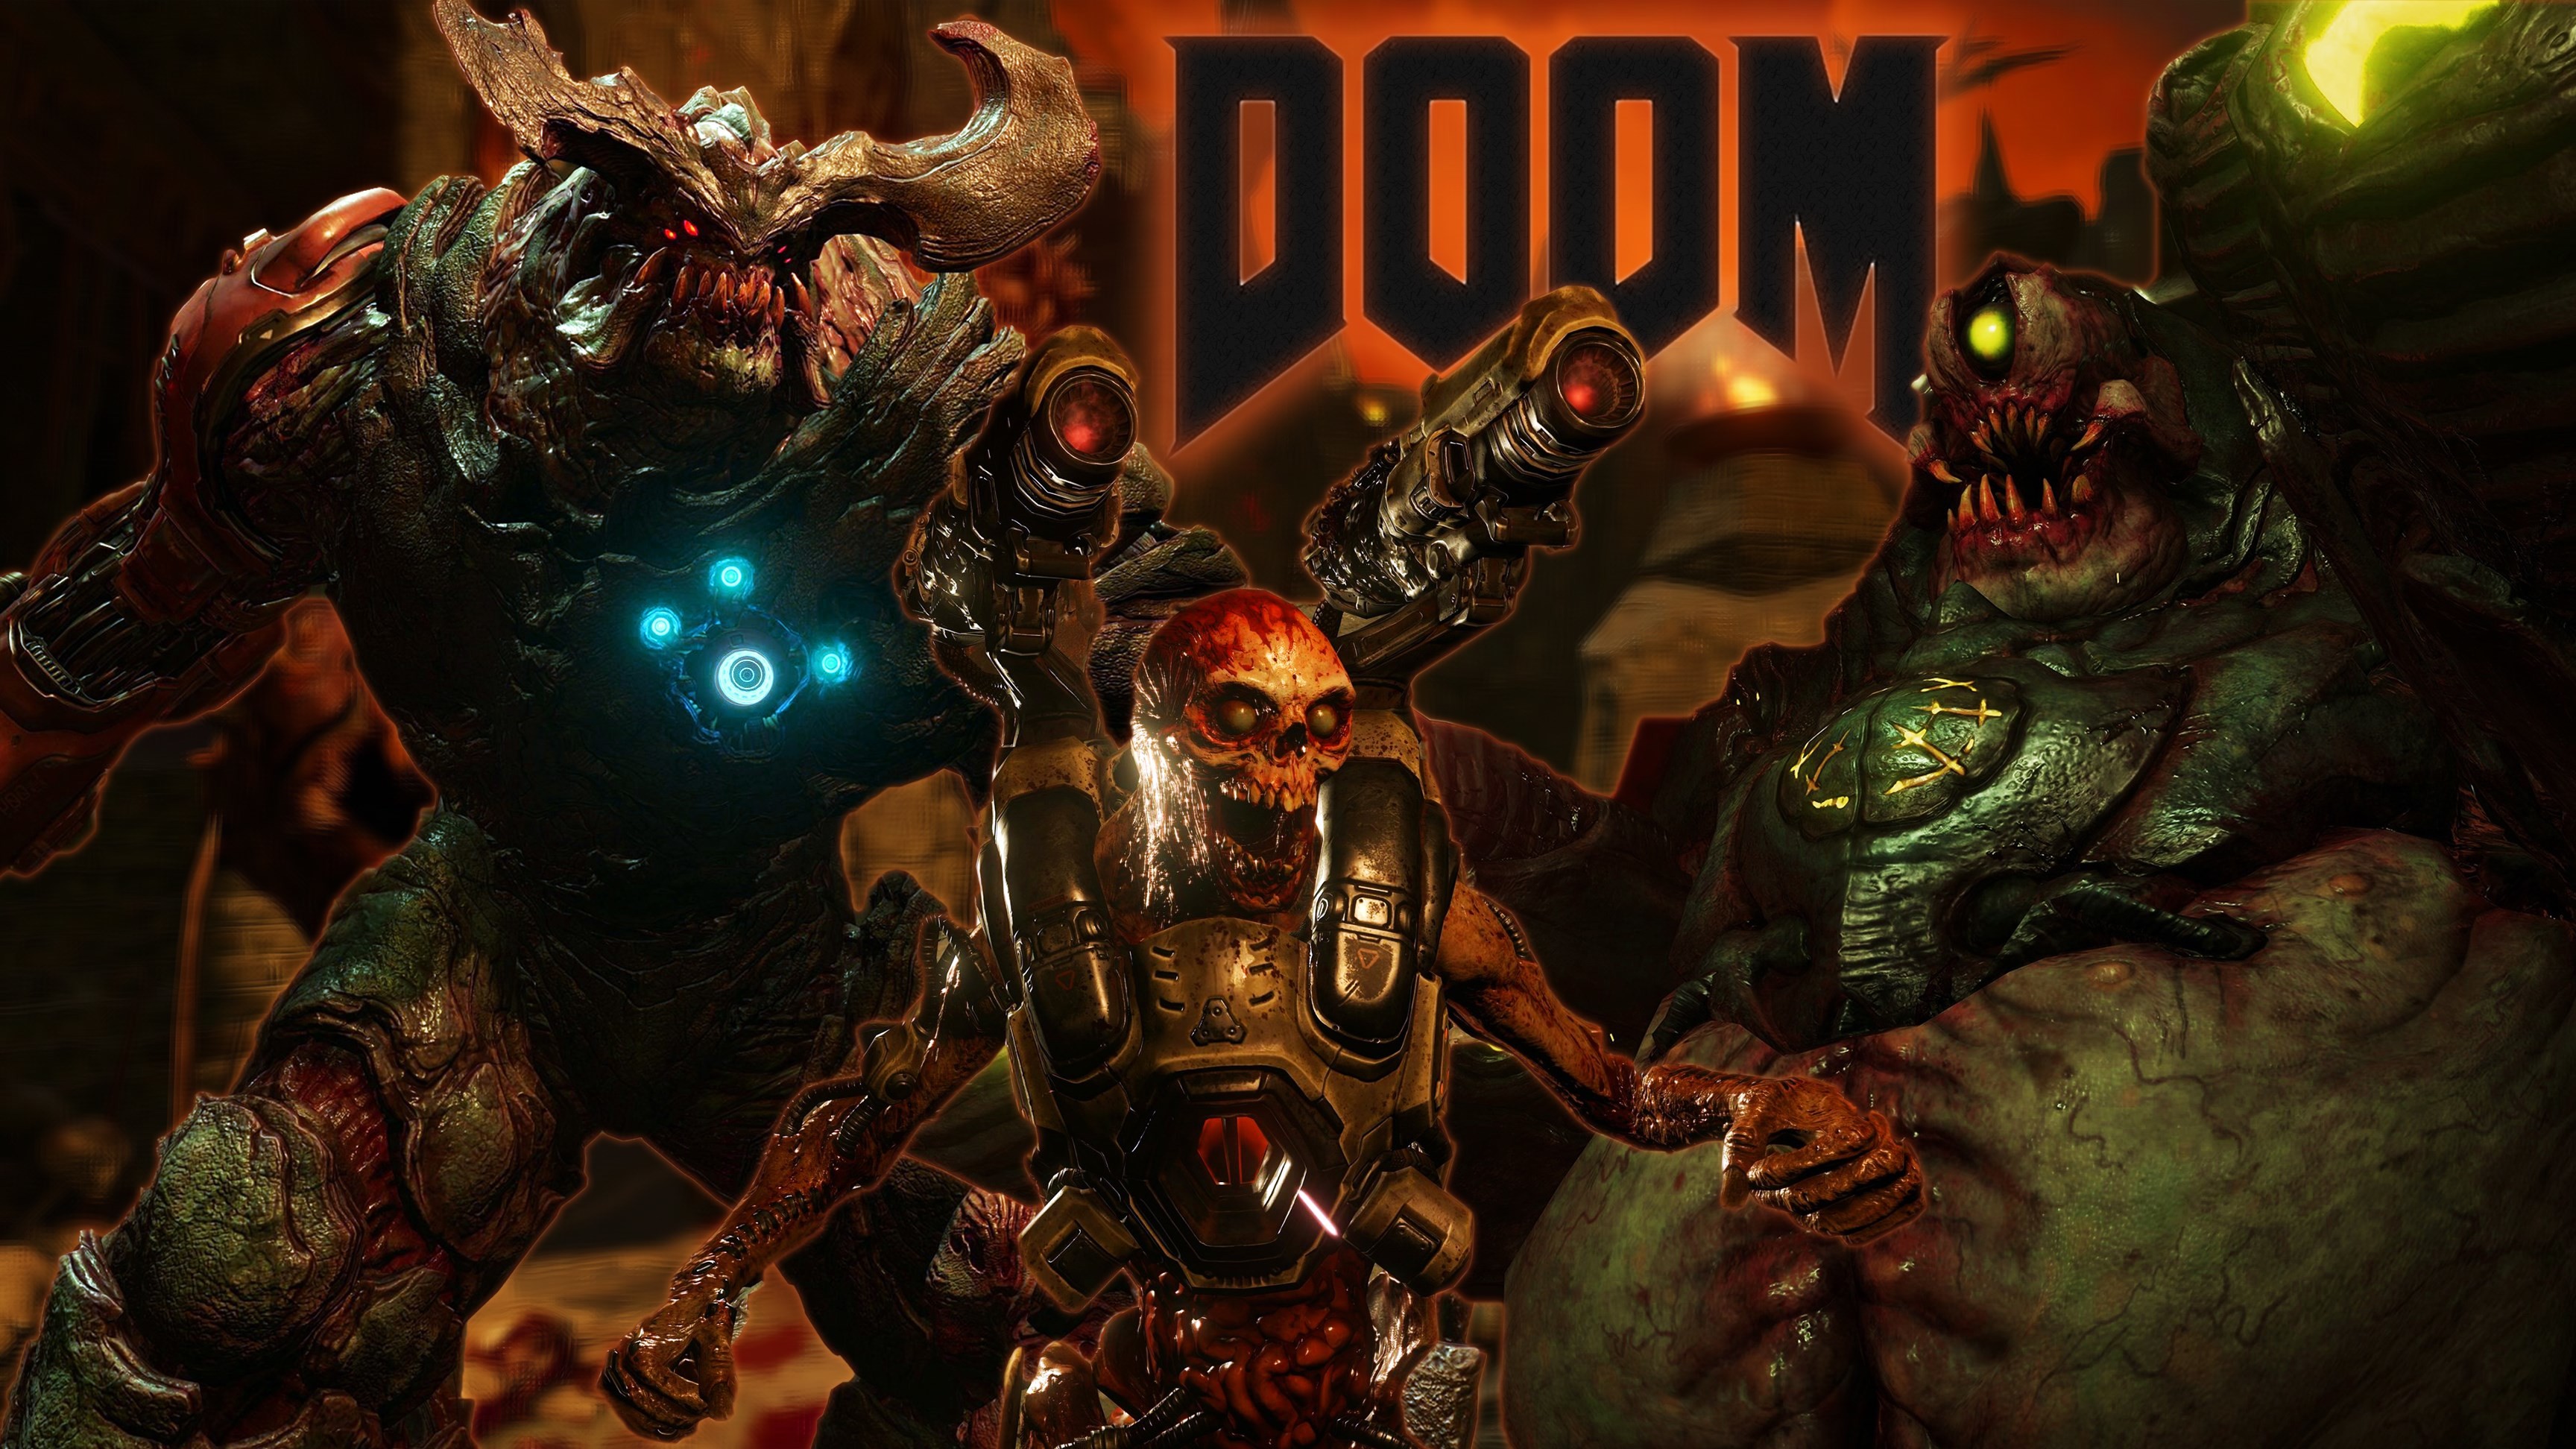 doom wallpaper 1080p,gioco di avventura e azione,gioco per pc,personaggio fittizio,giochi,demone